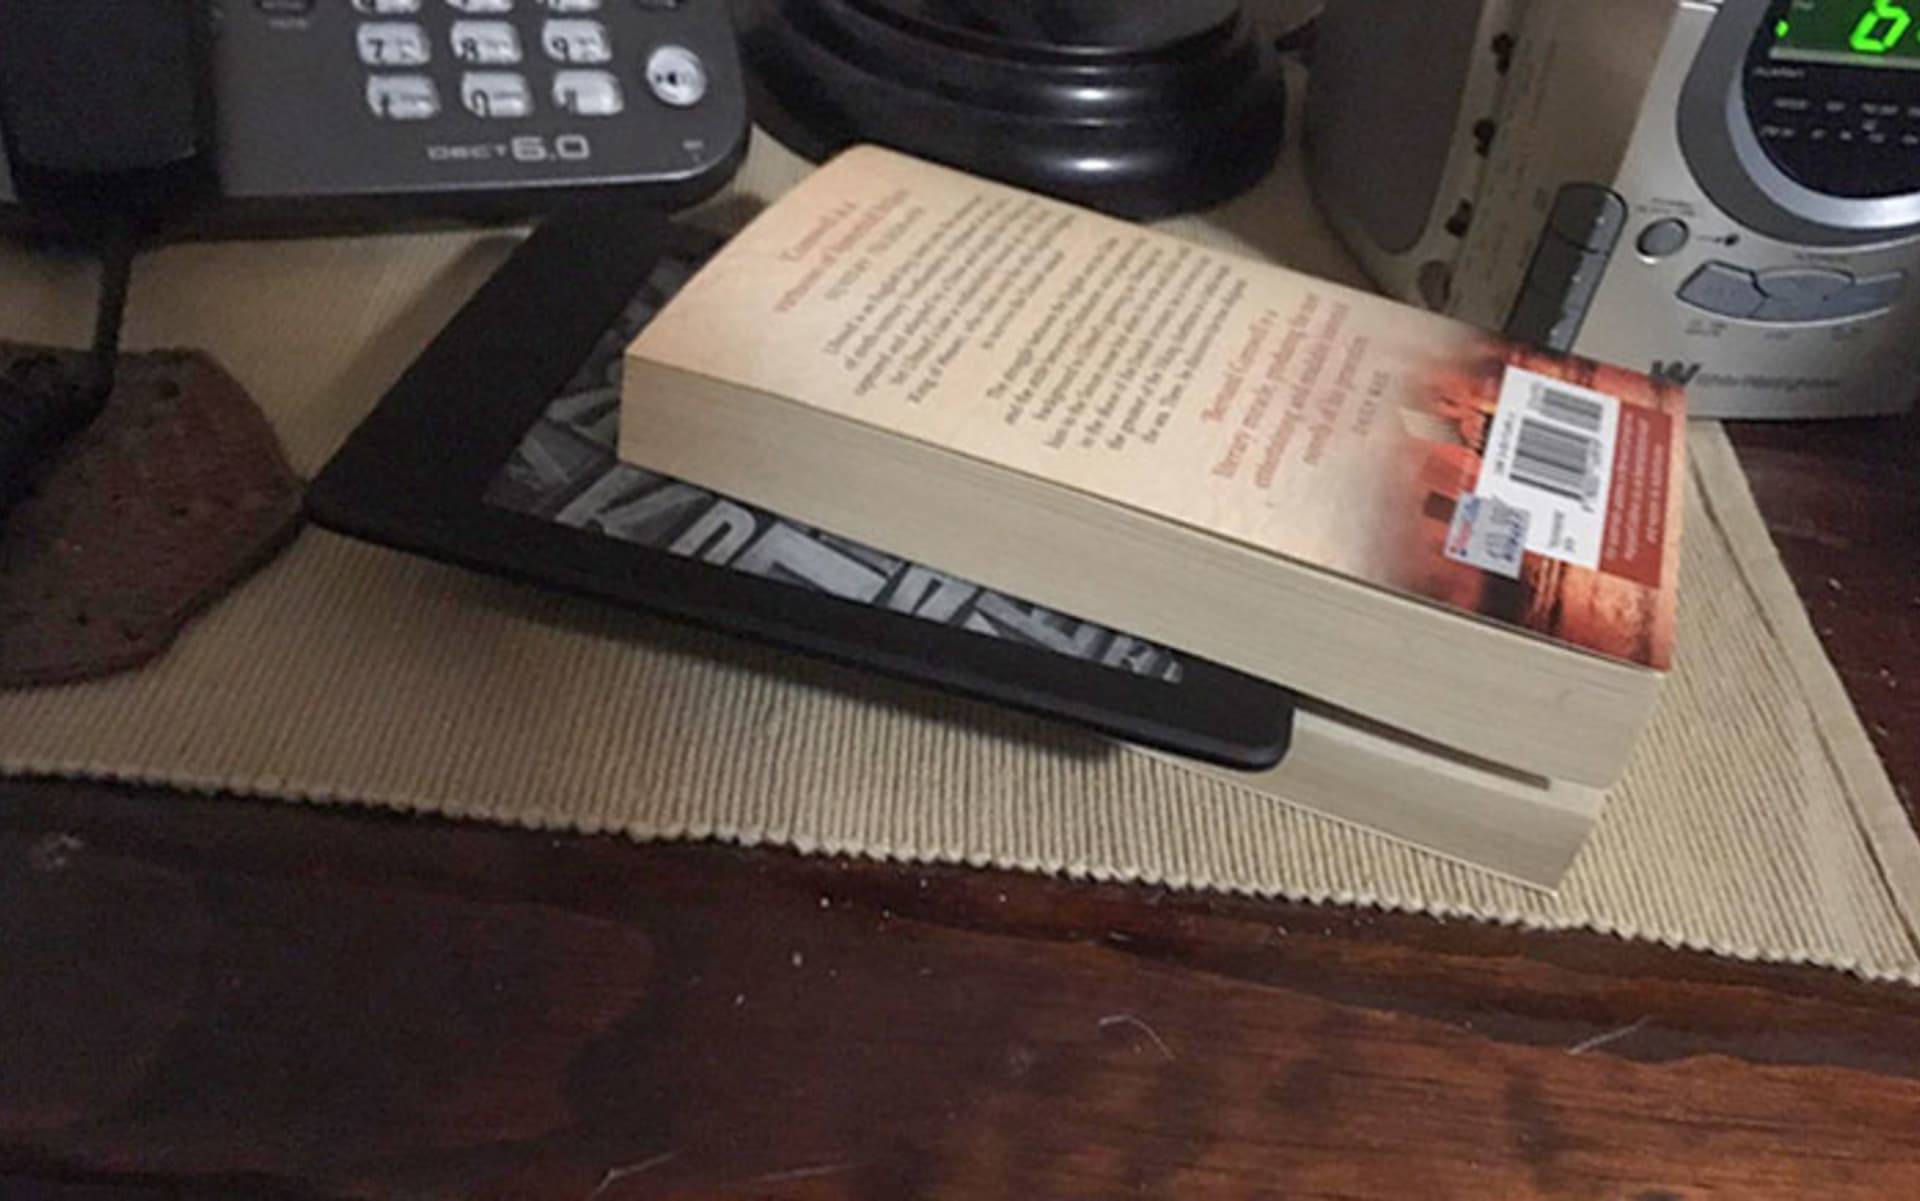 Táta používá čtečku e-knih jako záložku